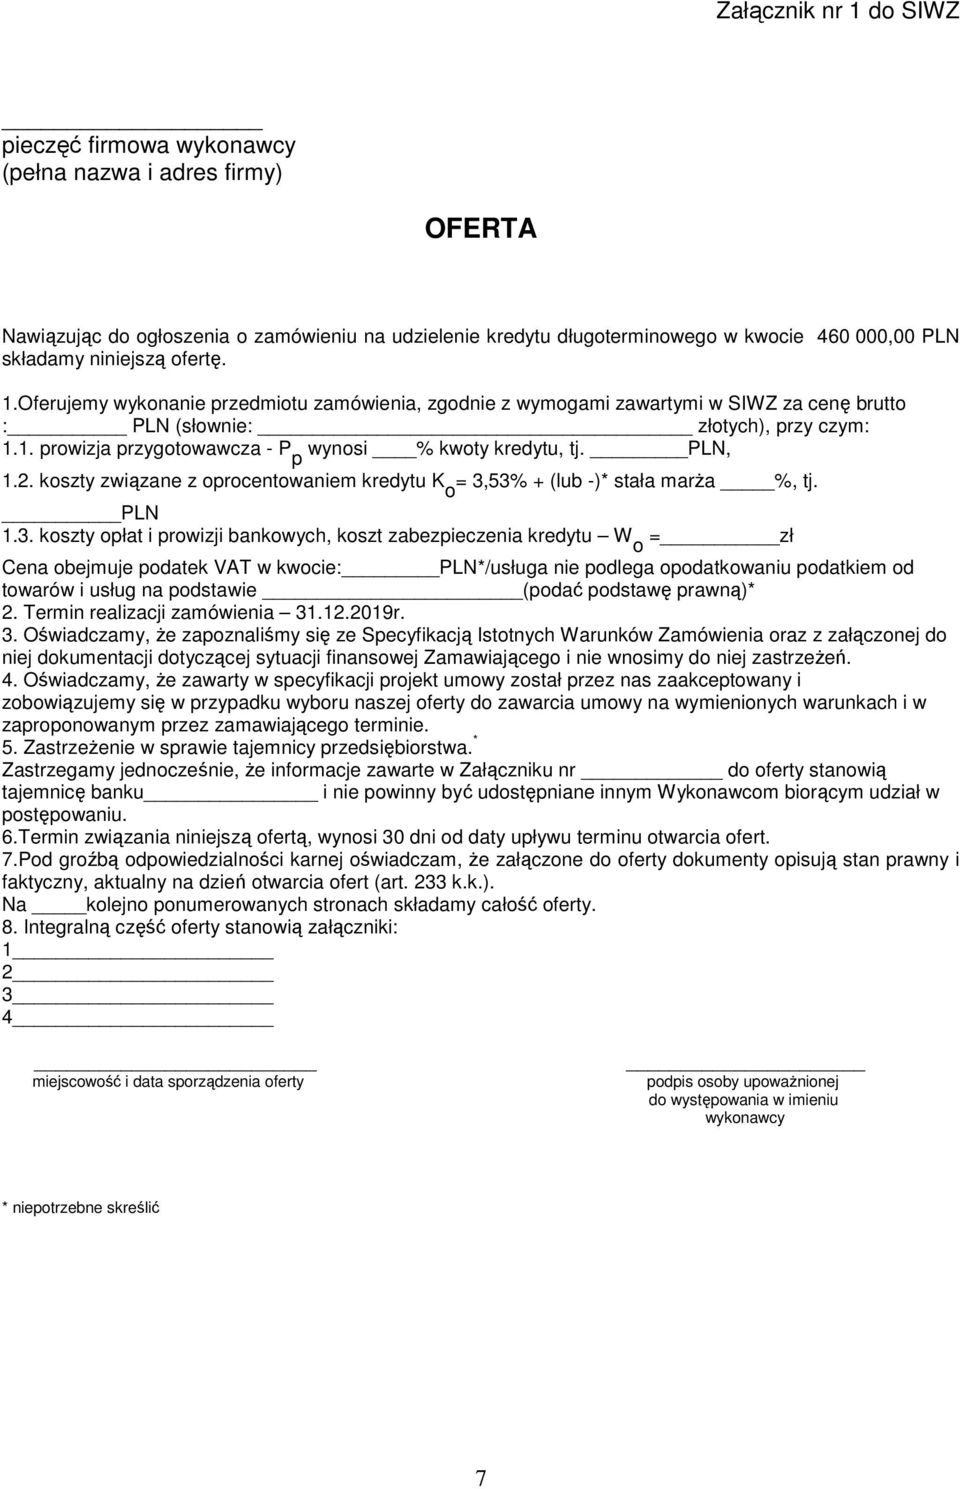 PLN, 1.2. koszty związane z oprocentowaniem kredytu K o = 3,